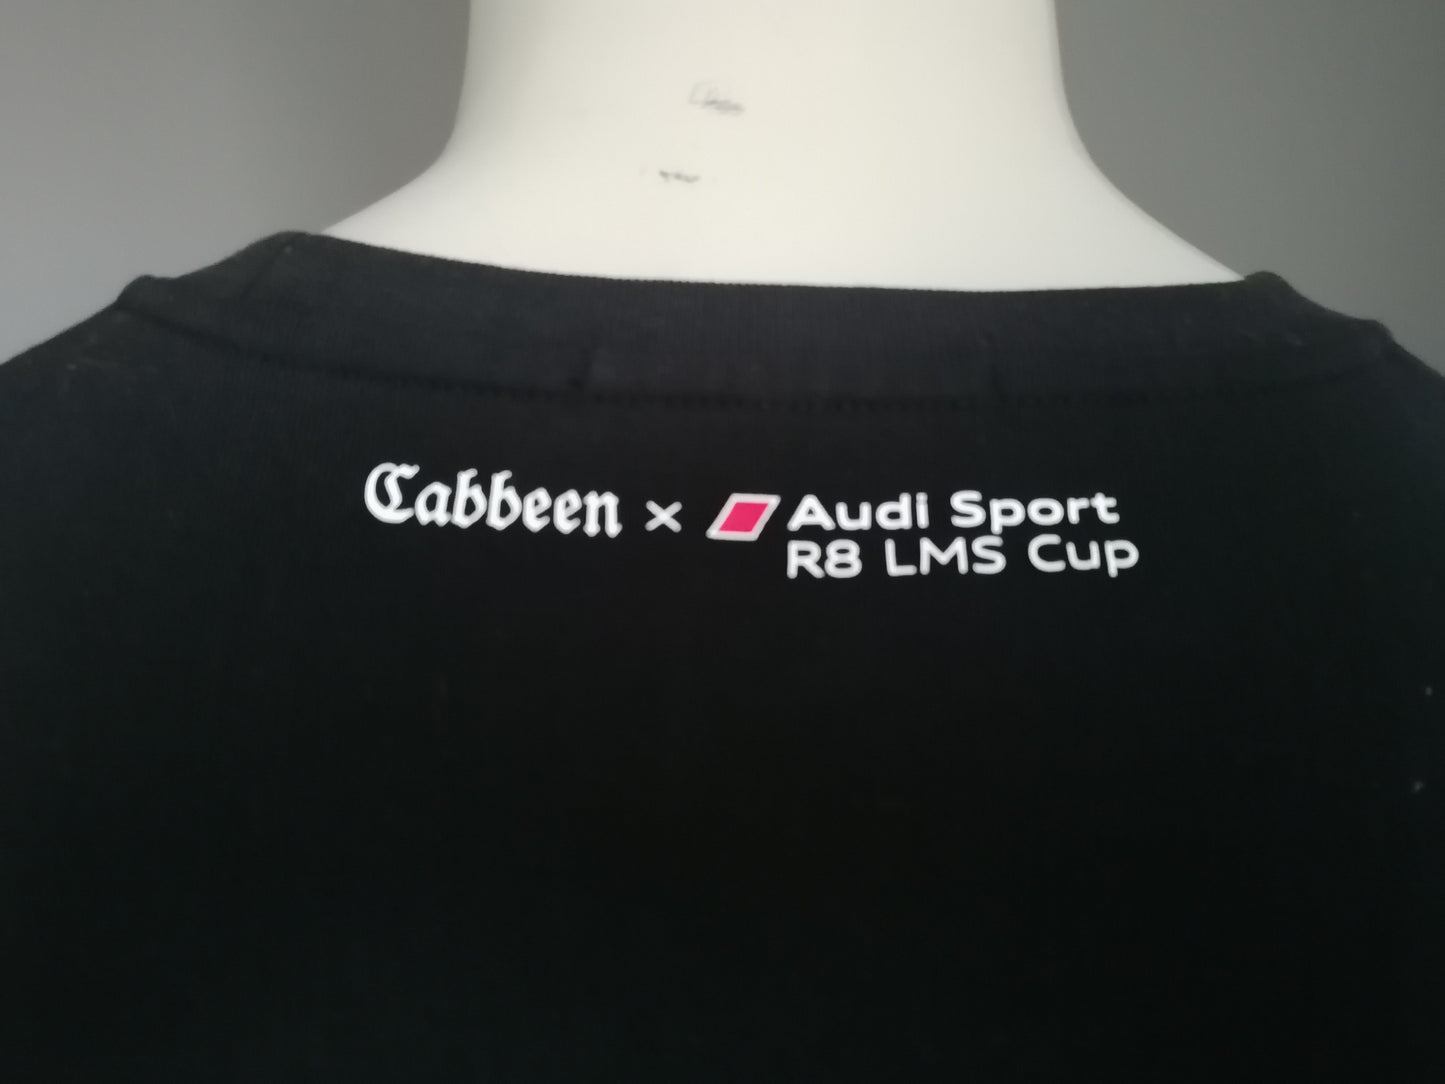 Cabbeen / Audi Sport trui. R8 LMS Cup. Zwart met opdruk. Maat 48 / M.